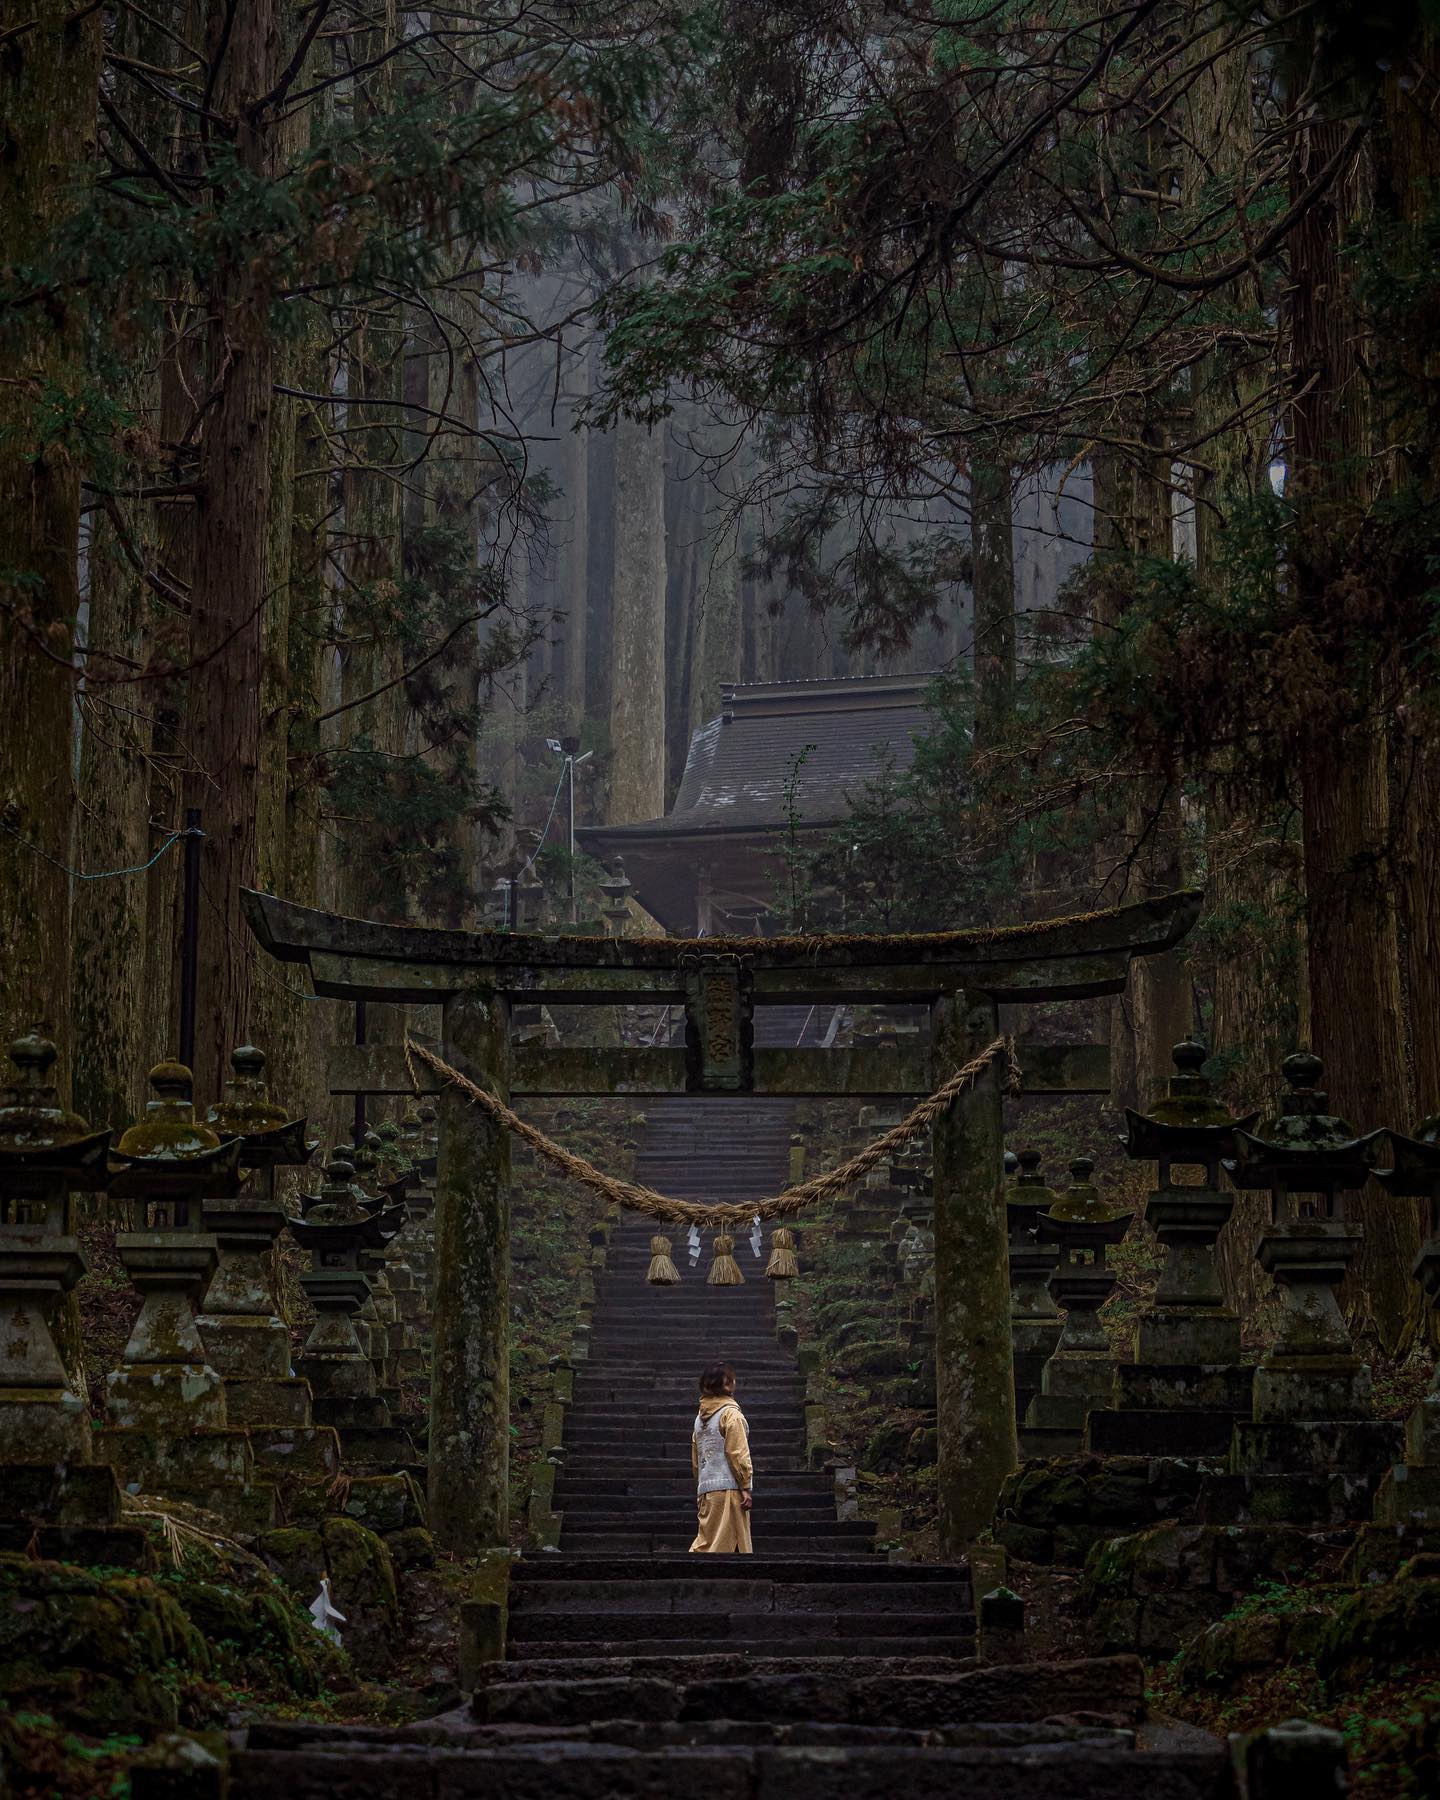 雨の日こそ美しい景色✨
　
るろ剣実写版のワンシーンで使われた、熊本県の上色見熊野座神社⛩
⁡
華やかさは無いけれど、苔に覆われ杉の木の中にひっそりと佇む様子は、雨の日こそしっとりと美しいと感じる場所だった✨
⁡
こーゆーとこ好きです💕
　
⁡
📍上色見熊野座神社（阿蘇市）
⁡
熊本旅はこちら→ #meg_kumamoto
⁡
 
⁡
𓇼Megumi's Instagram𓇼
⁡
@travel.richwoman
⁡
〜旅先での一瞬を永遠に残すアートフォト〜
⁡
年間180日以上世界や日本を旅をしながら暮らしています✨
旅先で出会った素敵な景色を、いつまでも残る鮮やかなアートのように🎨撮影してます📸
⁡
コメント＆フォローはお気軽に♪
撮影やお仕事のご依頼はDMください📩
⁡
⁡
⁡
⁡
#jalトラベルレポーター 
#熊本旅
#上色見熊野座神社 
#japan 
#kumamoto 
#阿蘇 
#熊本観光 

　
　
#genic_japan #genic_mag #photo_travelers #japantravelgallery #rakutentravel #jalan_travel #retrip_news #japan_travel #東京カメラガールズ #カメラガールズ #東京カメラ部 #秘境トラベラー #東京女子部 #JALトラベルレポーター #タビノタネ #春のときめき #誰かに見せたい風景 #国内旅行